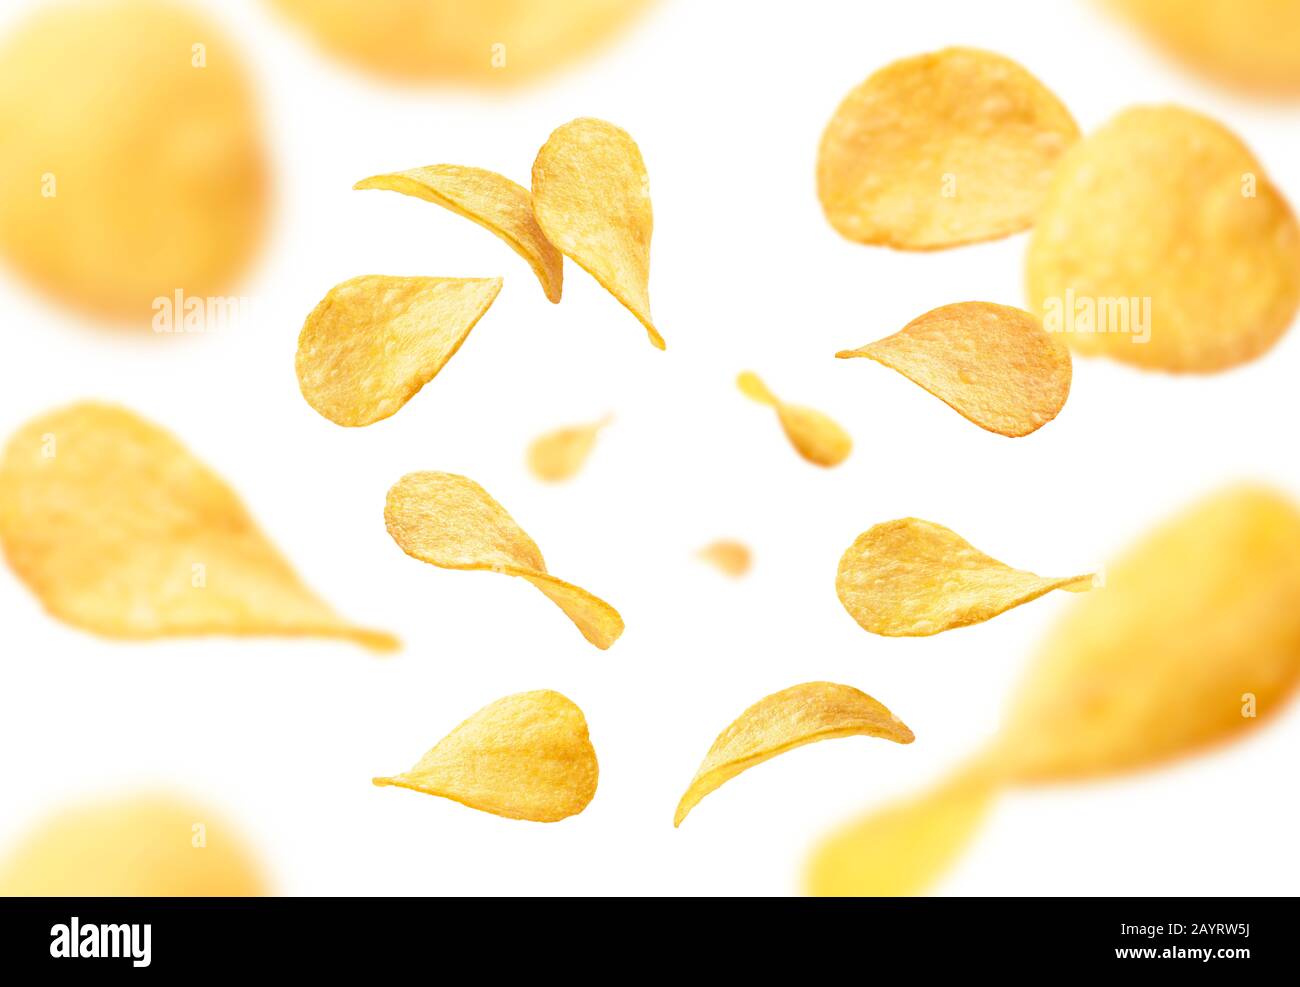 Les chips de pommes de terre sont levitate sur un fond blanc Banque D'Images